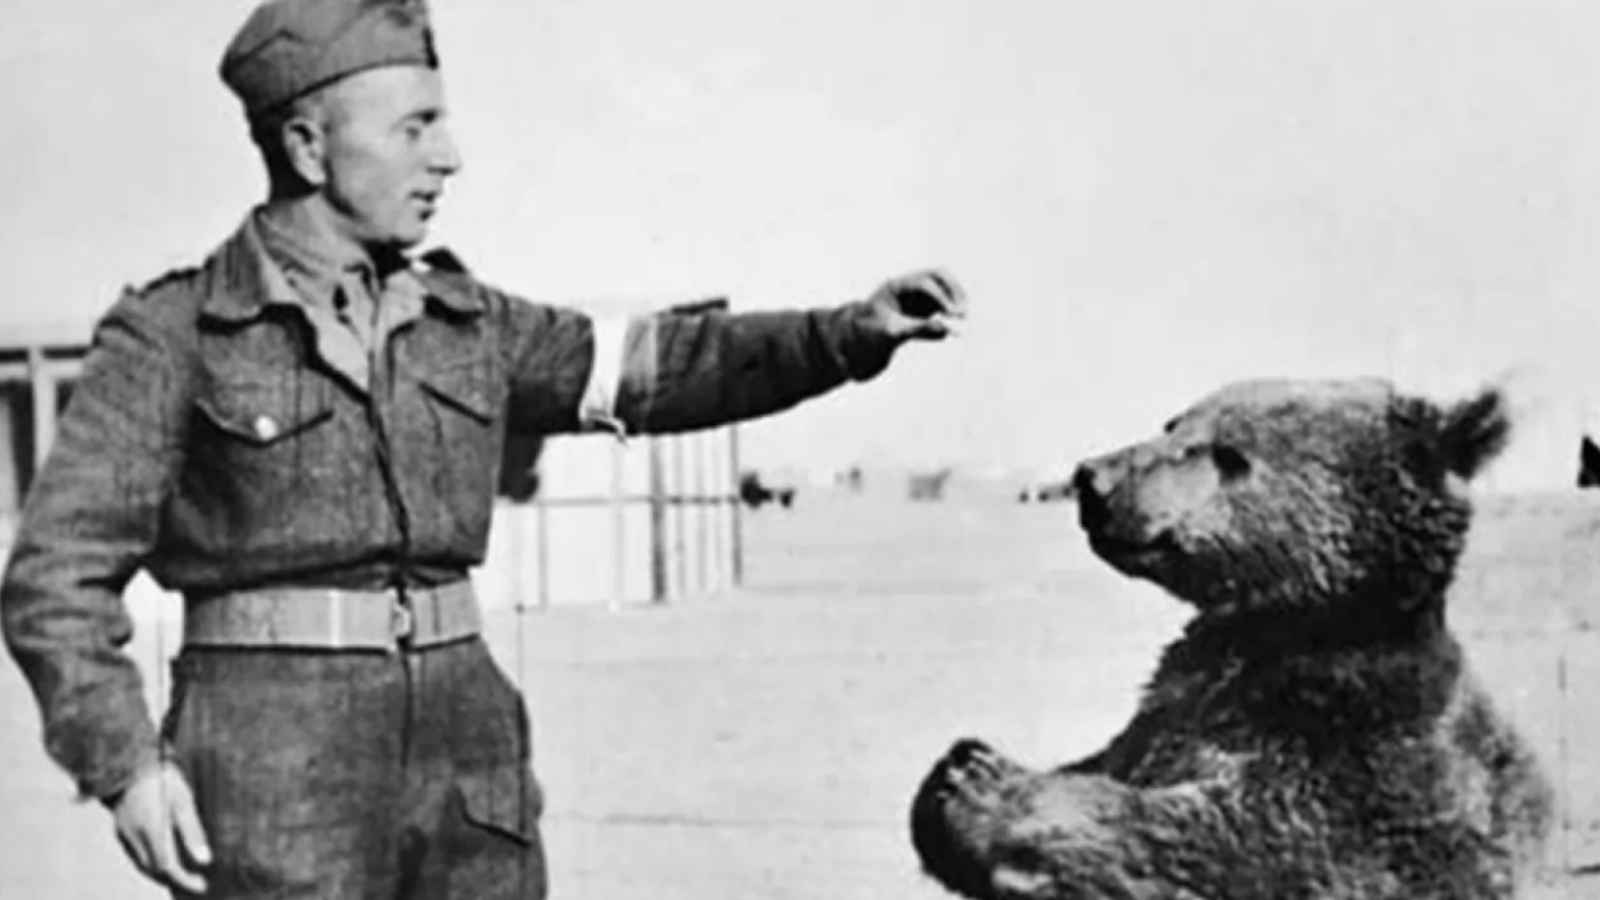 Wojtek, l'orso soldato del reggimento polacco durante la seconda guerra mondiale